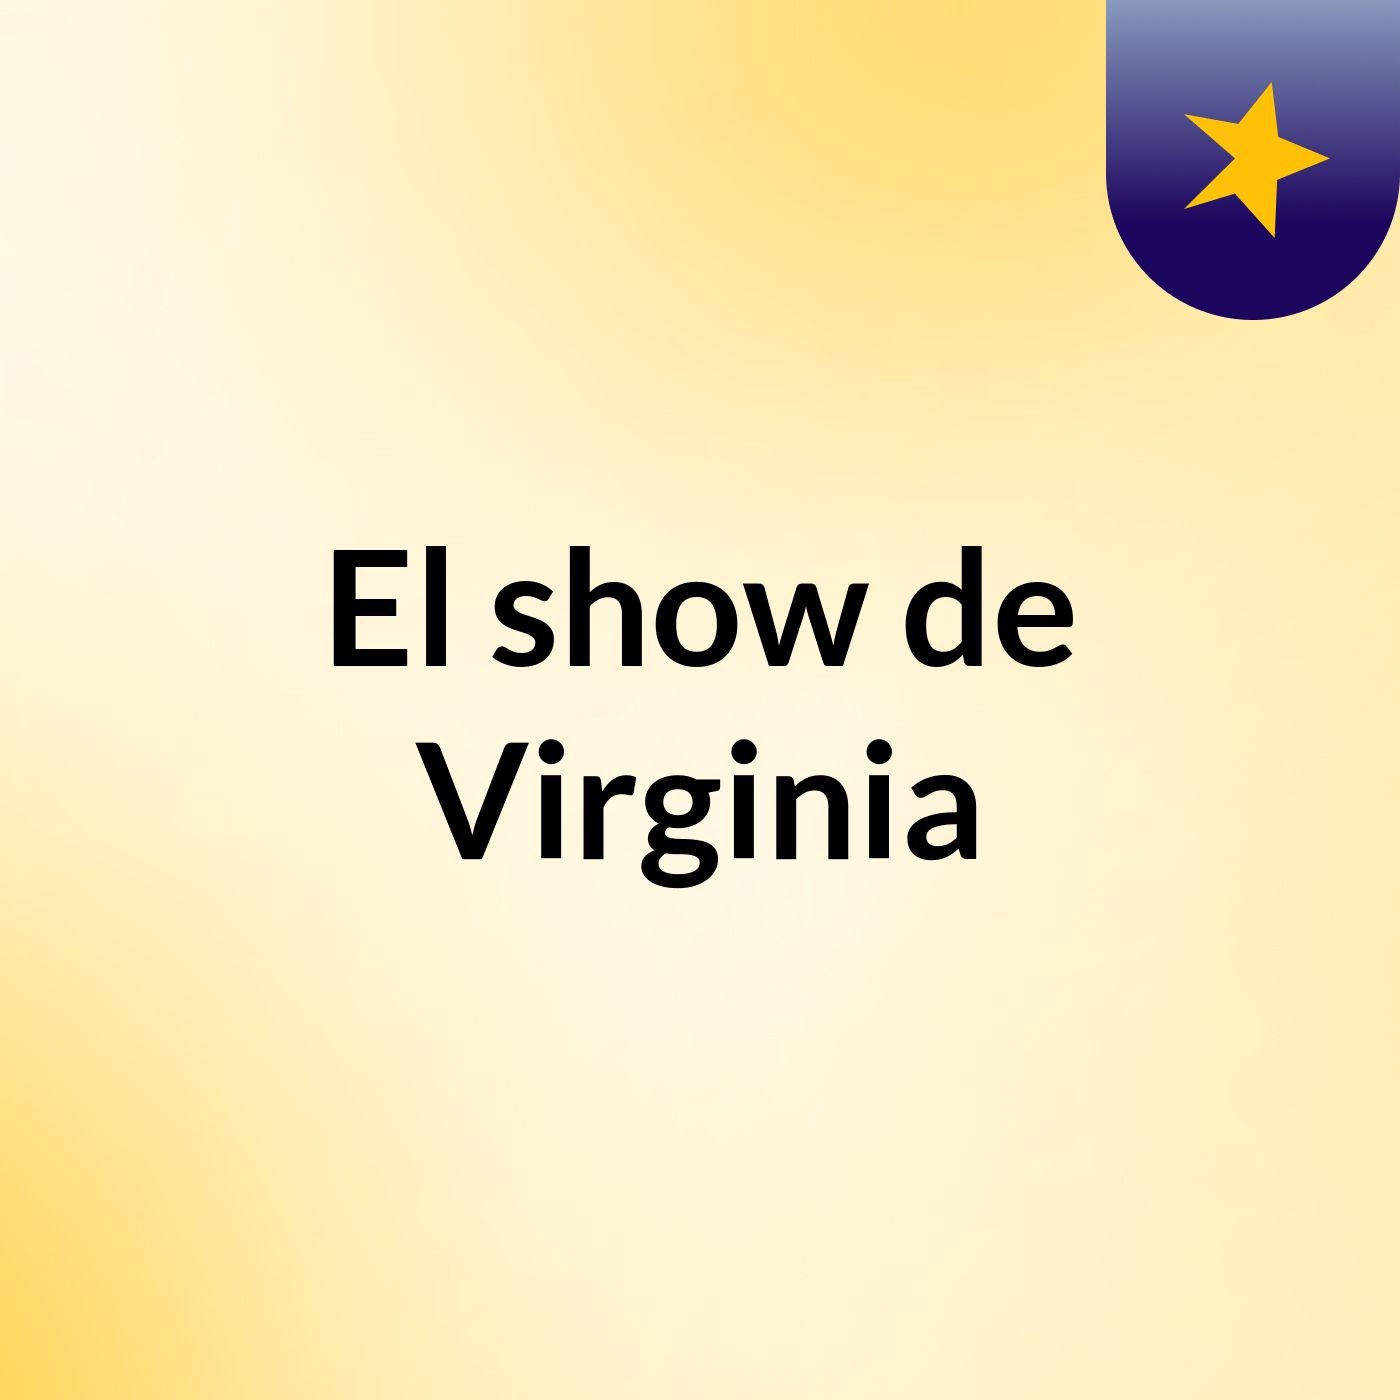 El show de Virginia